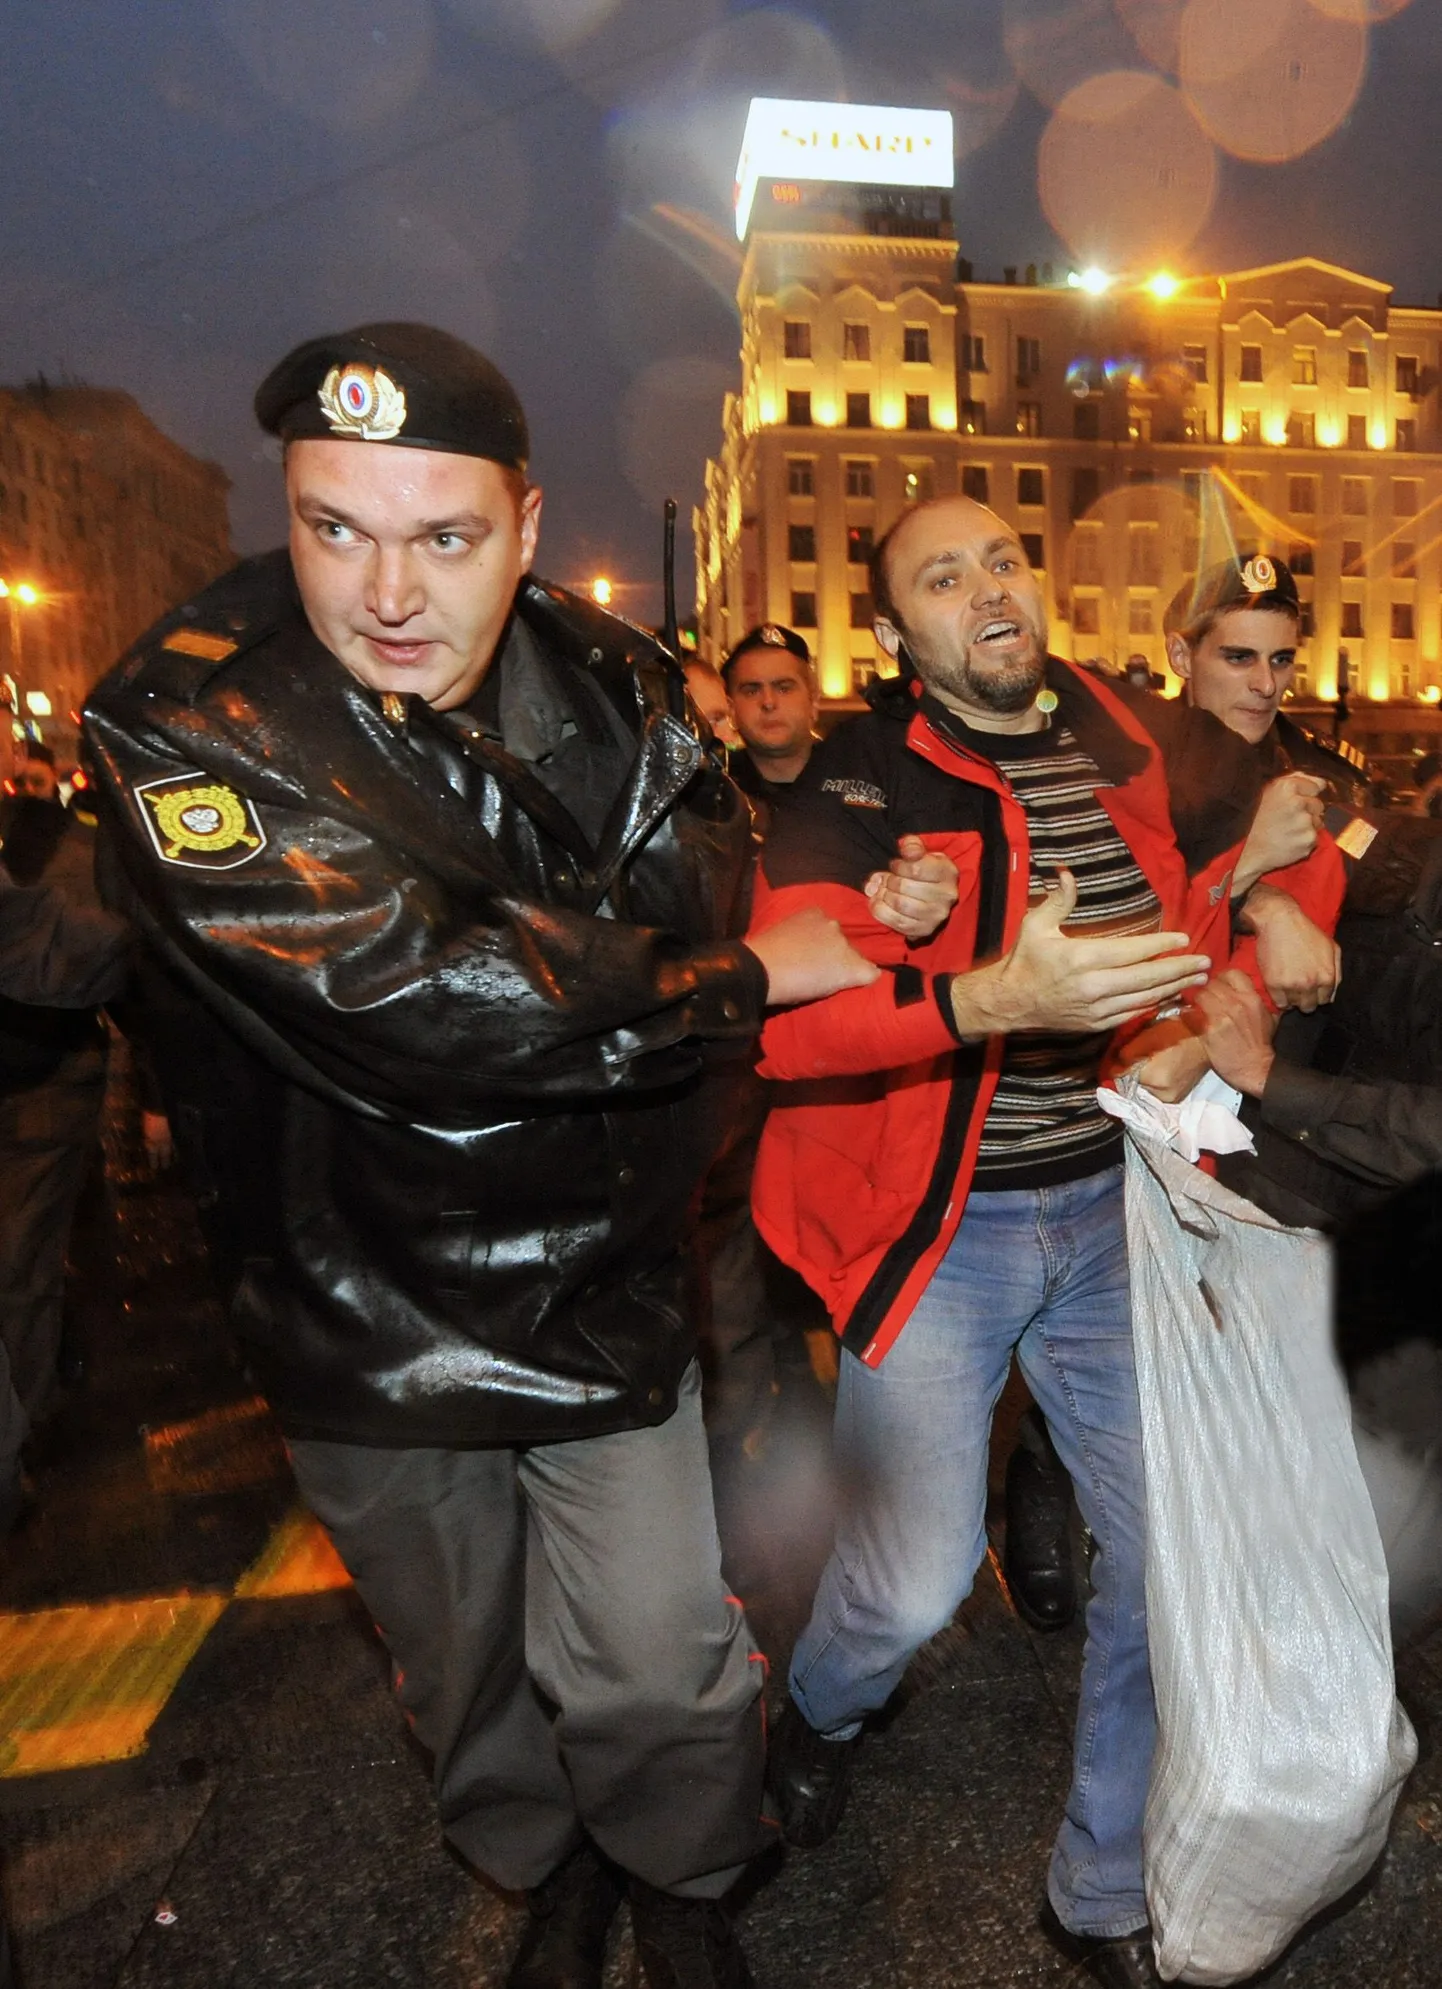 Miilitsatöötajad ajavad laial meeleavaldust Moskva linnavalitsuse ees. Pilt on tehtud 28. septembril, mil president vallandas linnapea Lužkovi.